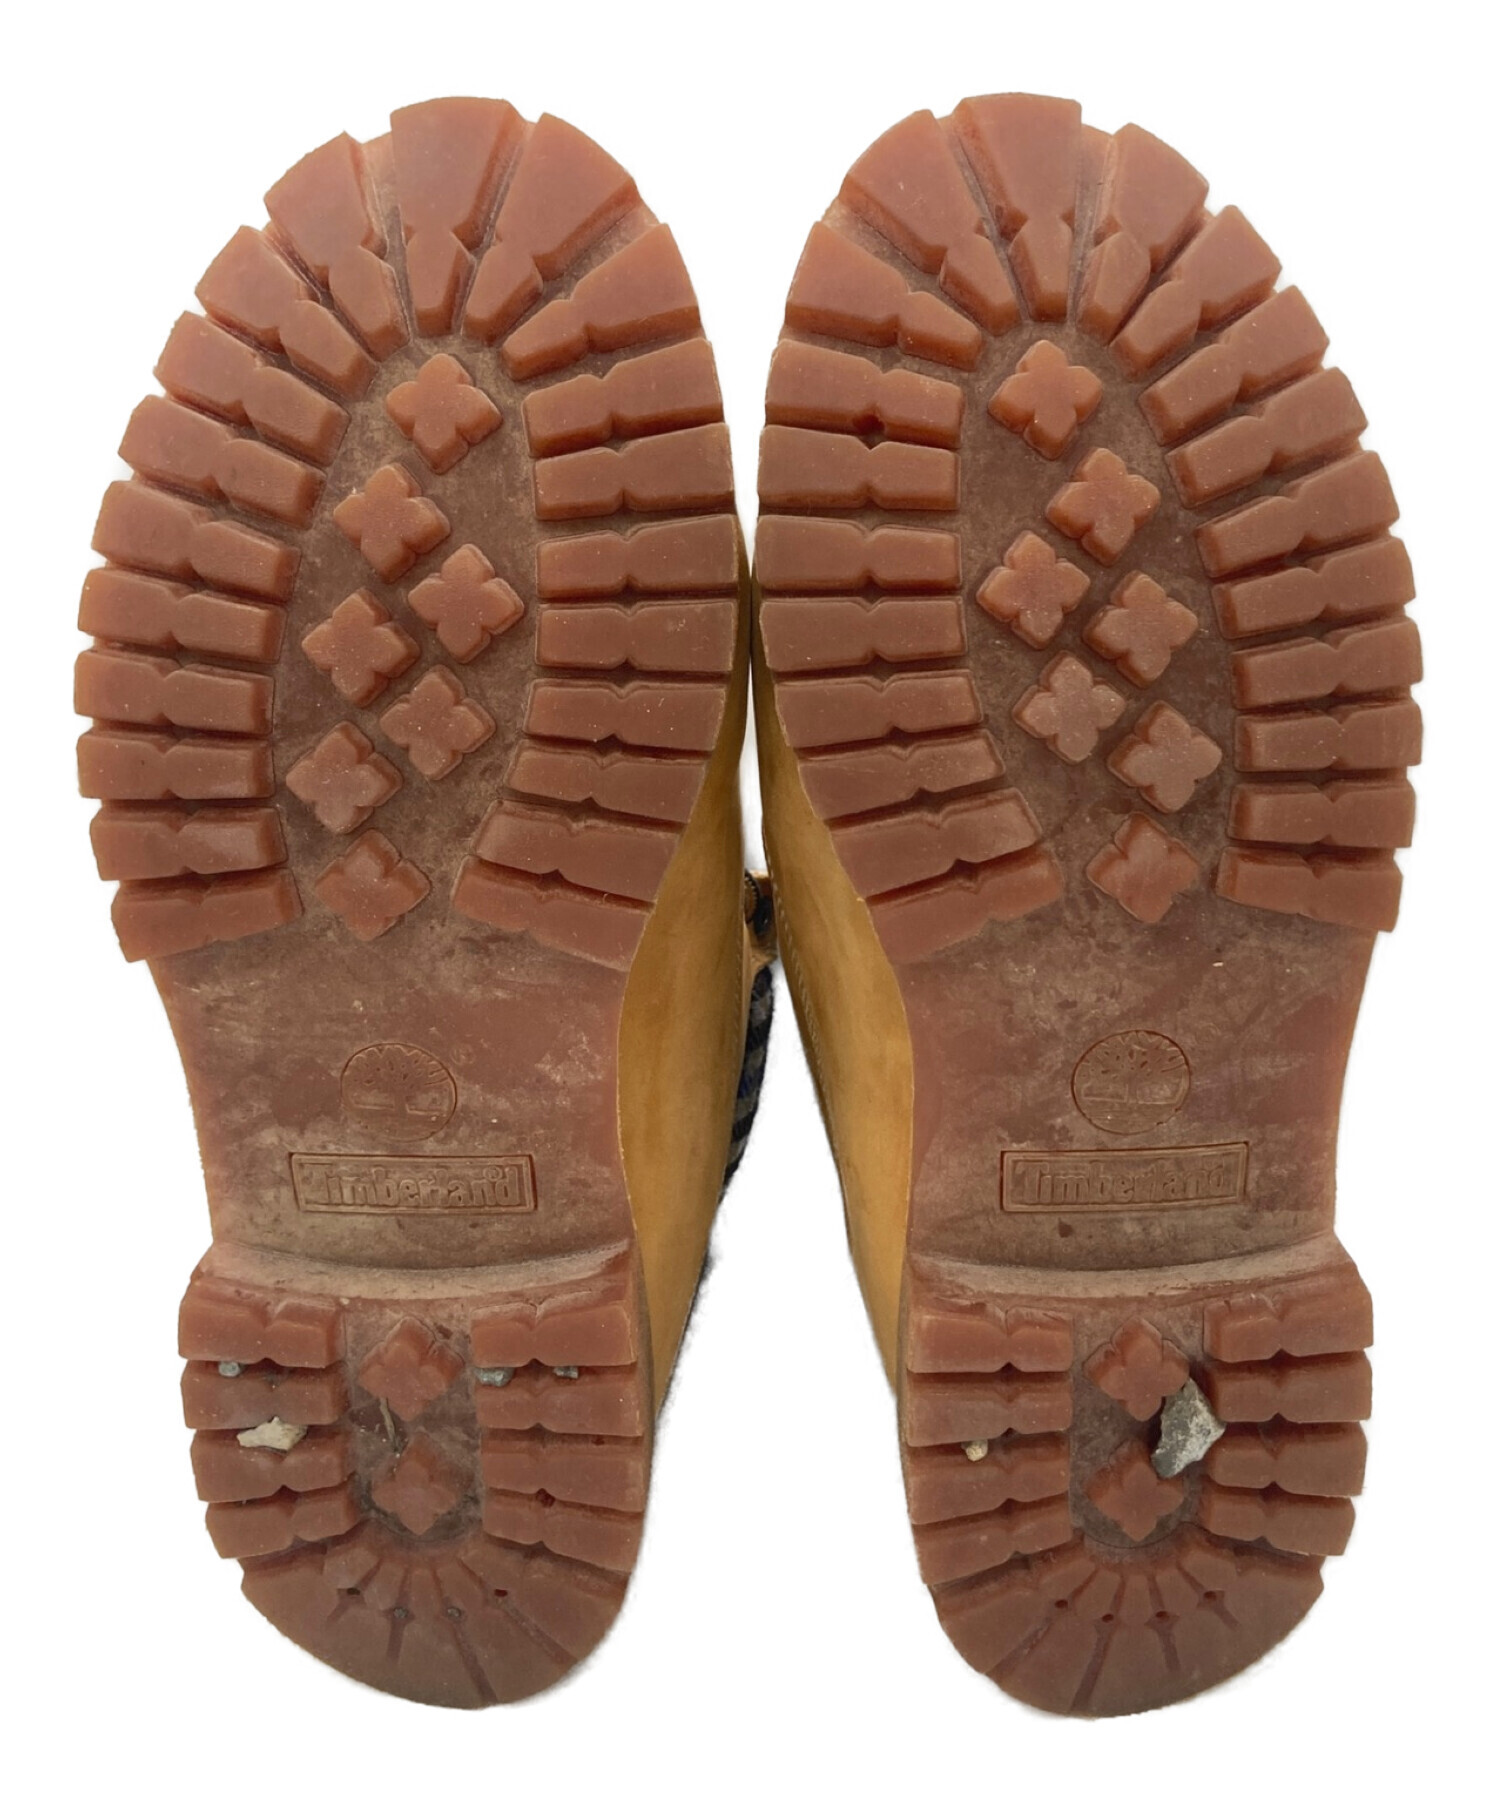 Timberland (ティンバーランド) WOOLRICH (ウールリッチ) ブーツ キャメル サイズ:28